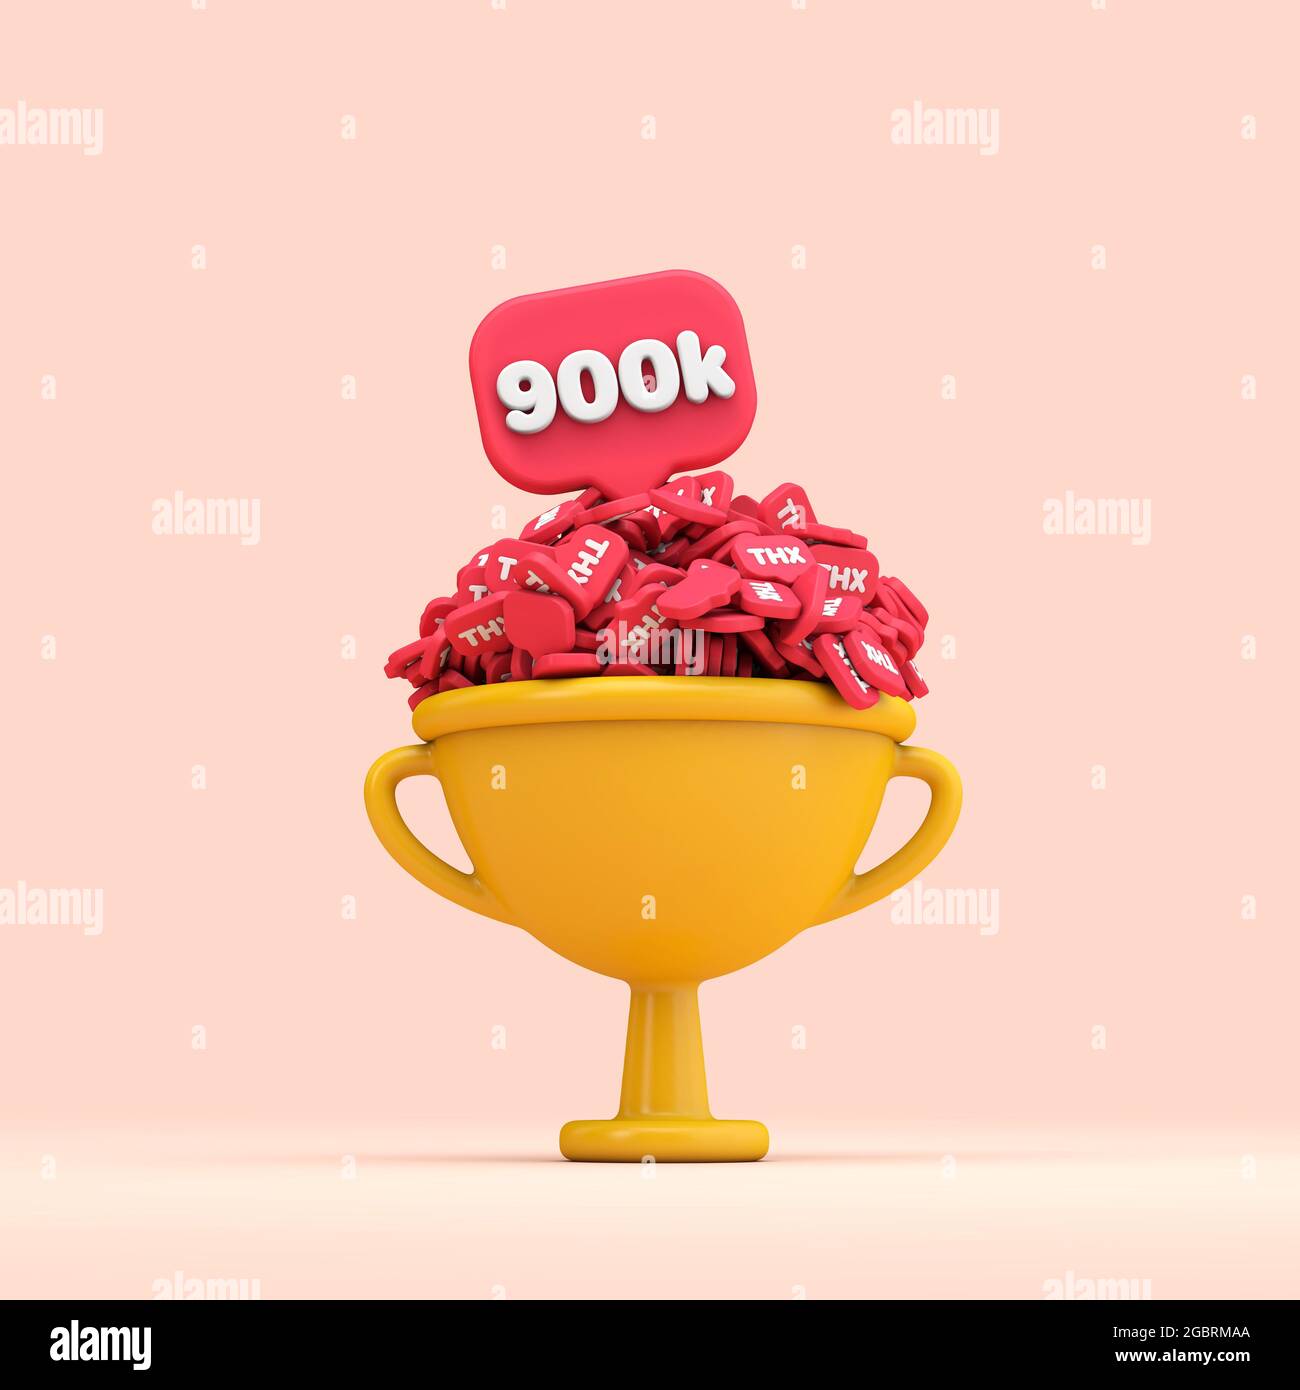 Grazie 900k social media tifosi celebrazione trofeo. Rendering 3D Foto Stock